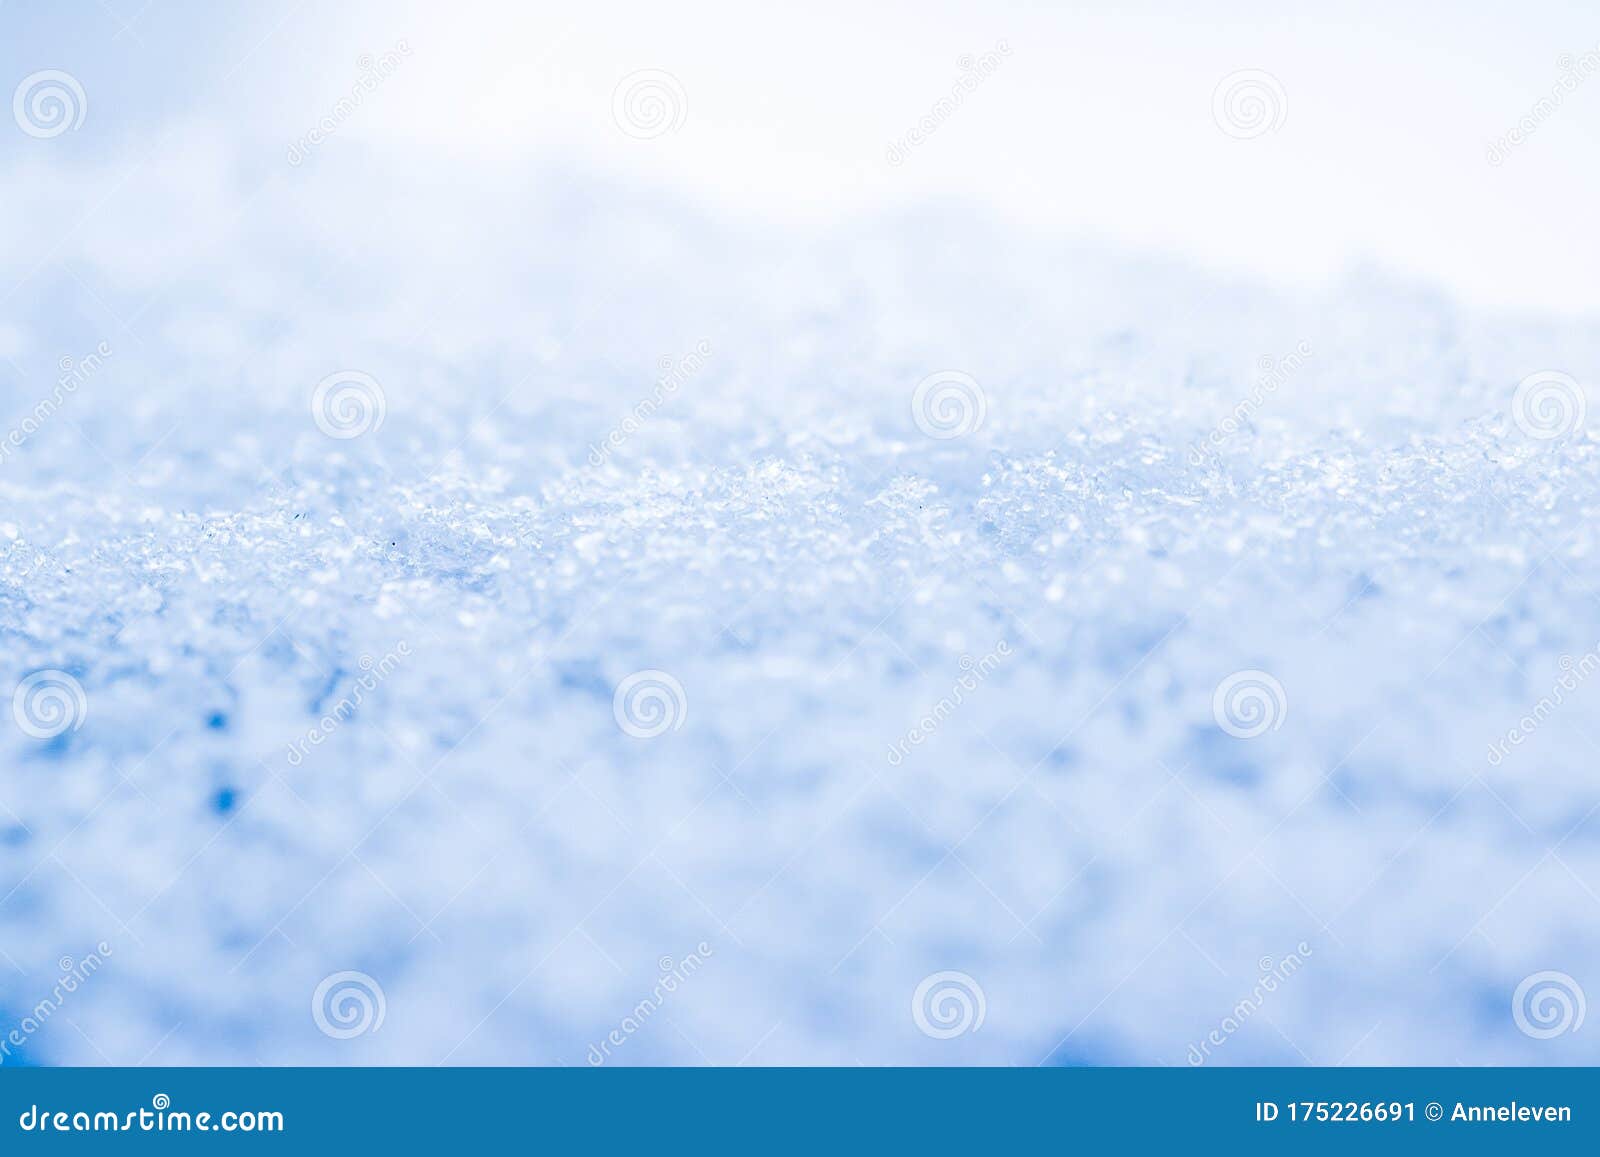 冬 假季节背景下的雪质库存图片 图片包括有冬 假季节背景下的雪质